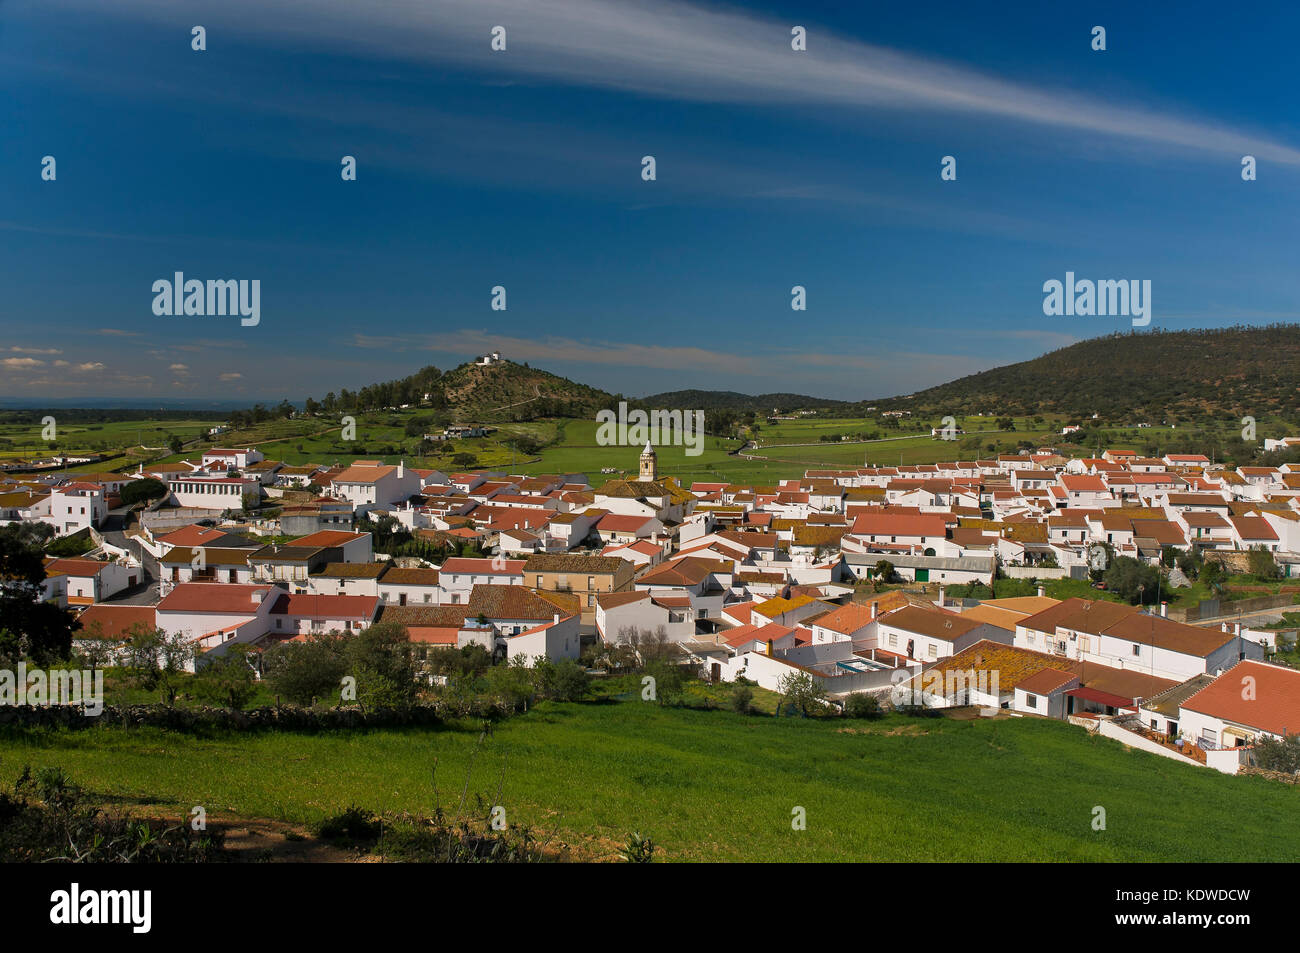 Vue panoramique, el Almendro, province de Huelva, Andalousie, Espagne, Europe Banque D'Images